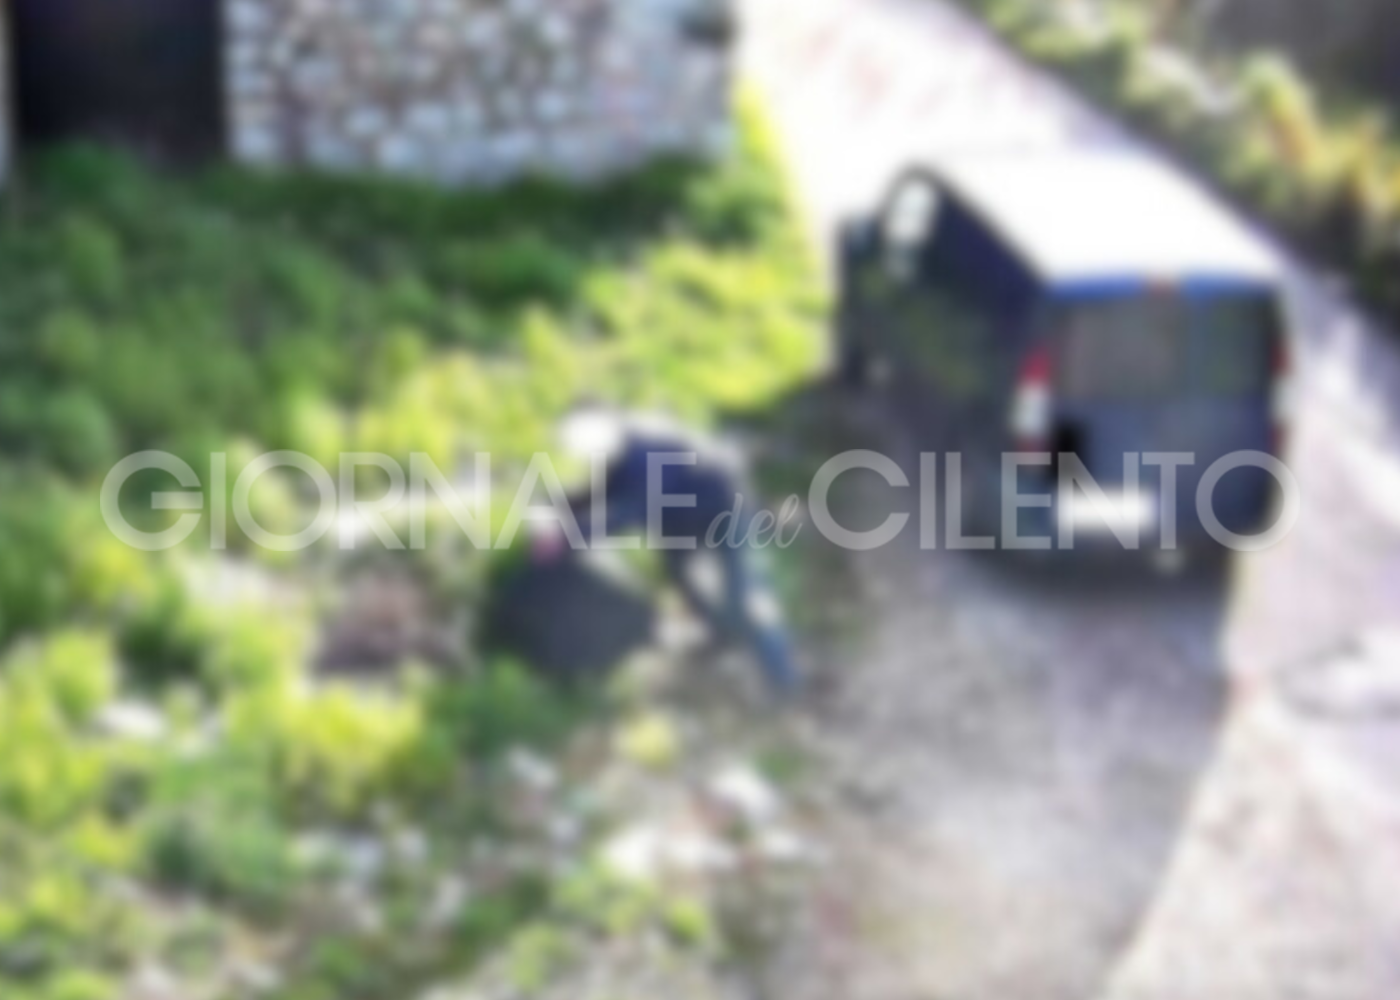 Vallo della Lucania, abbandonano rifiuti in strada: incivili beccati dalle telecamere